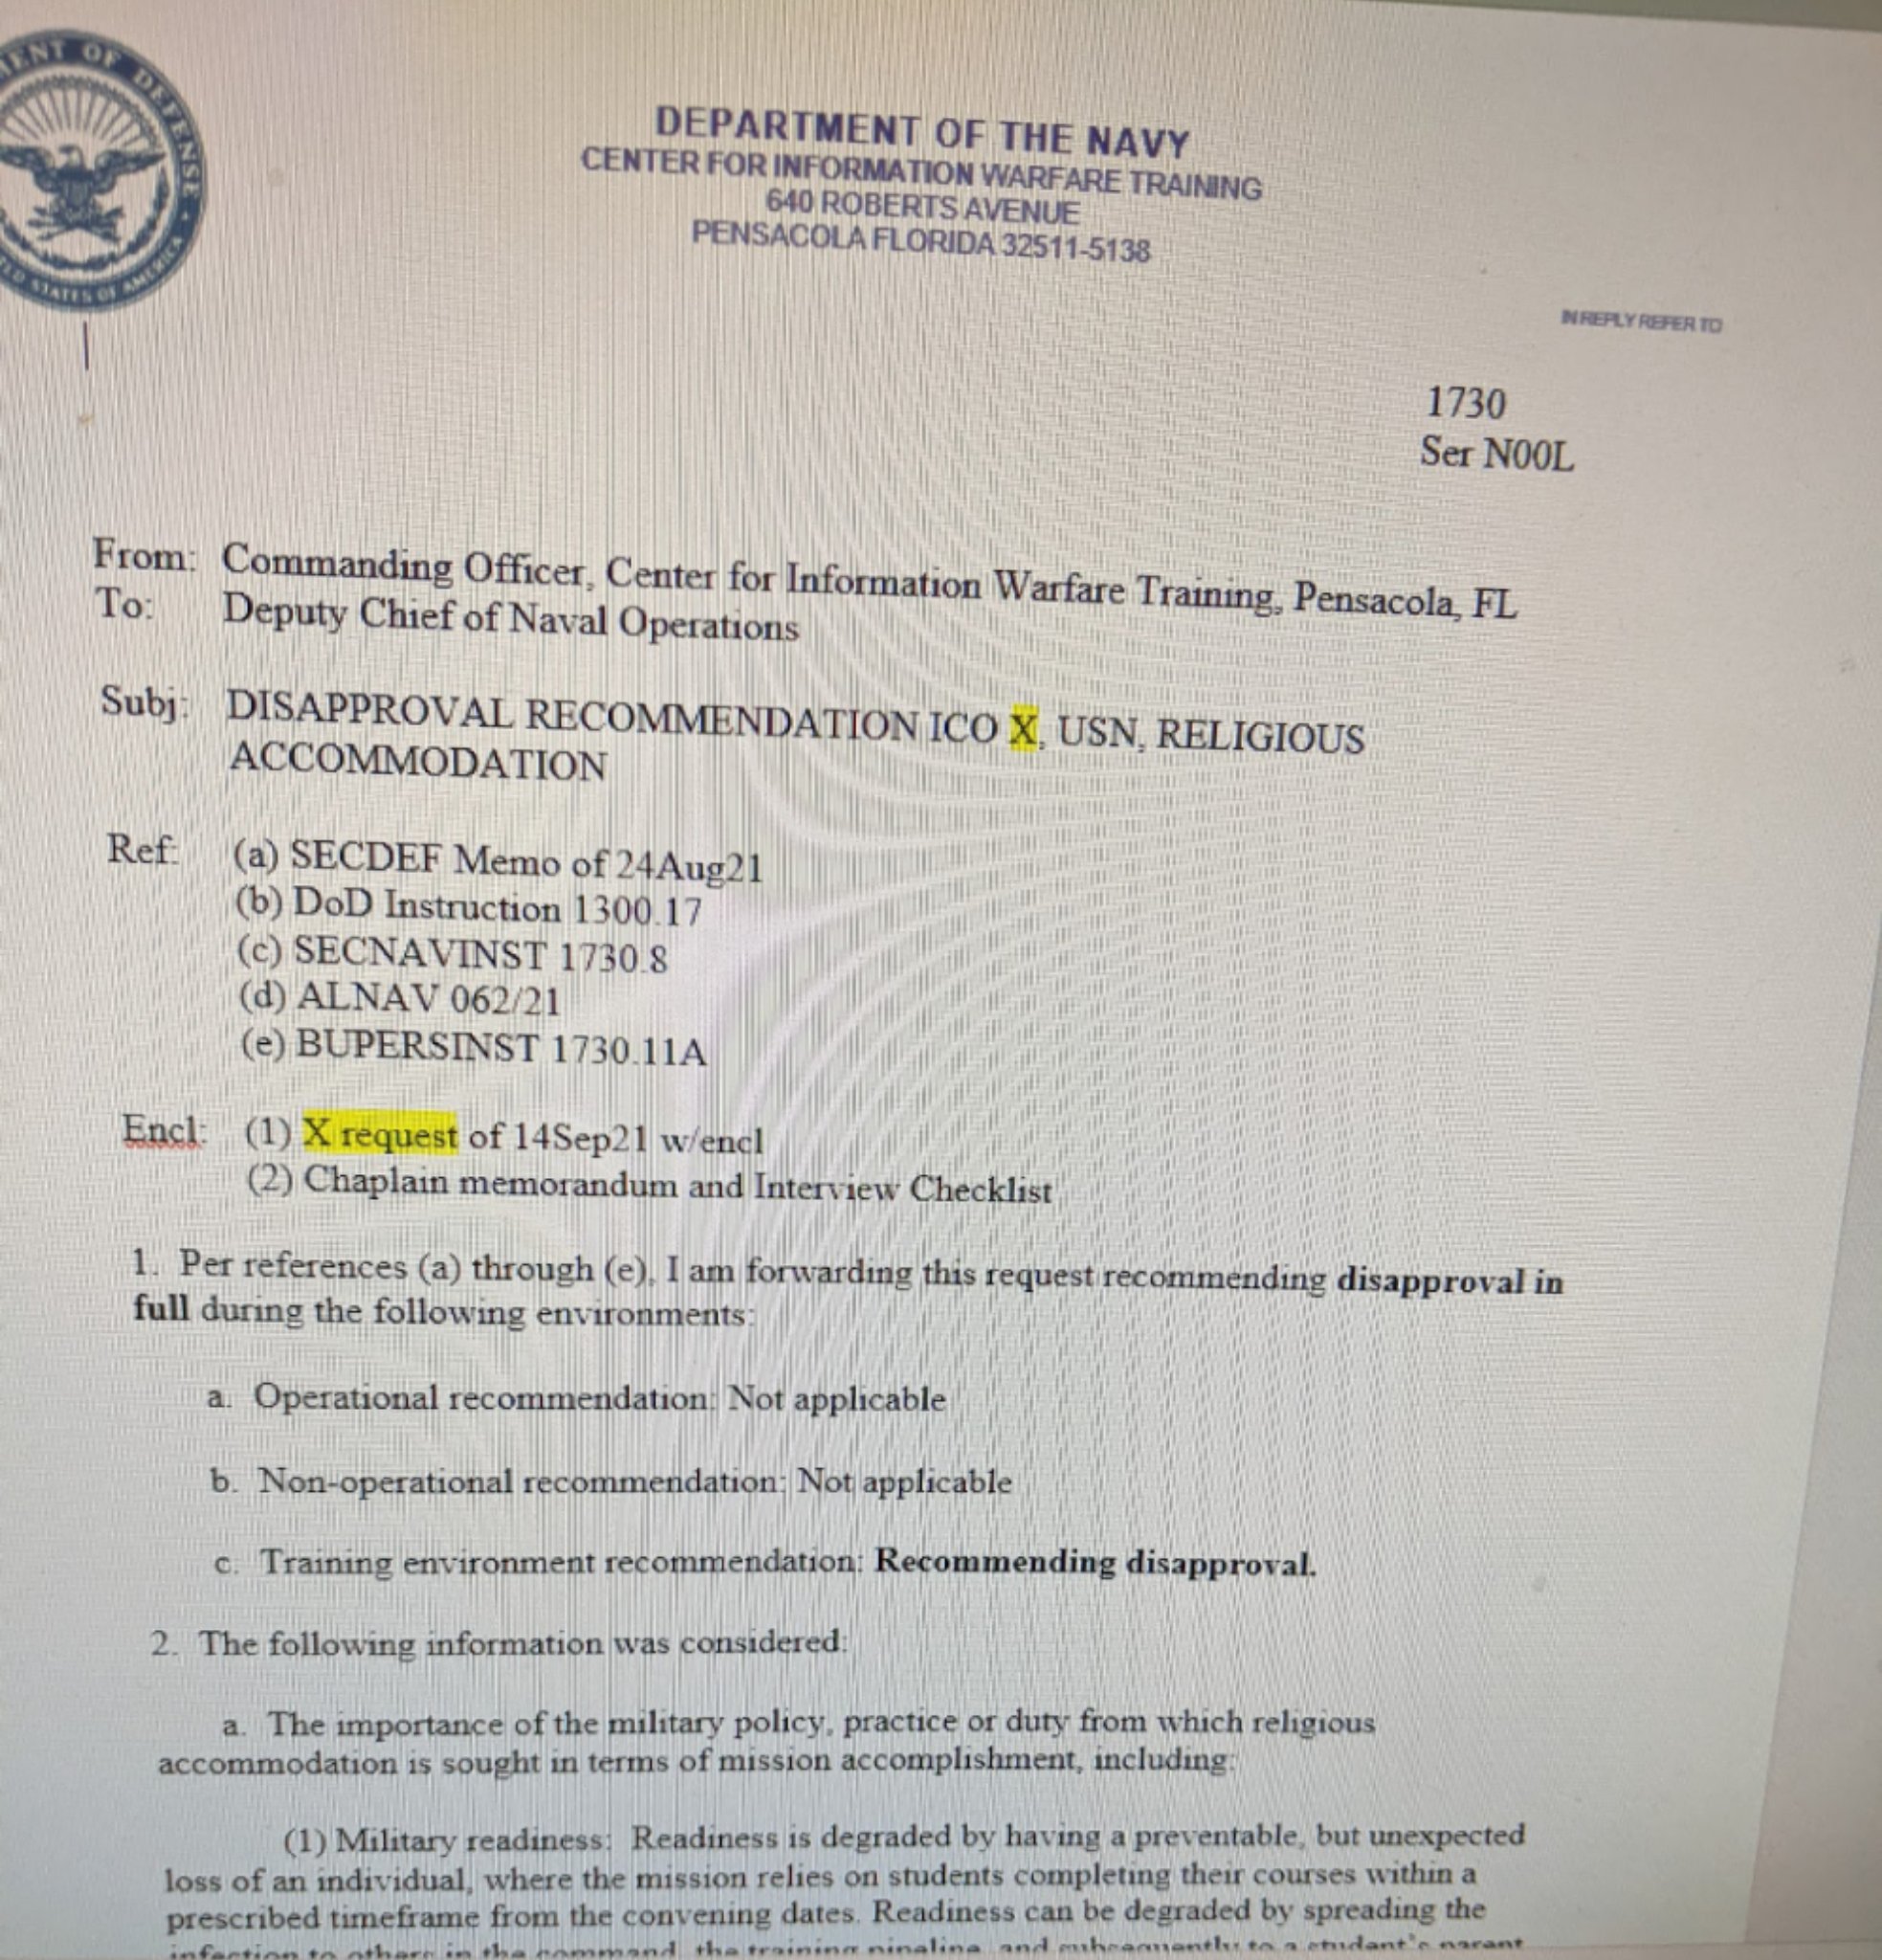 Liz Wheeler on Twitter: "22/ BREAKING: Ive obtained documents With Regard To Department Of The Navy Letterhead Template